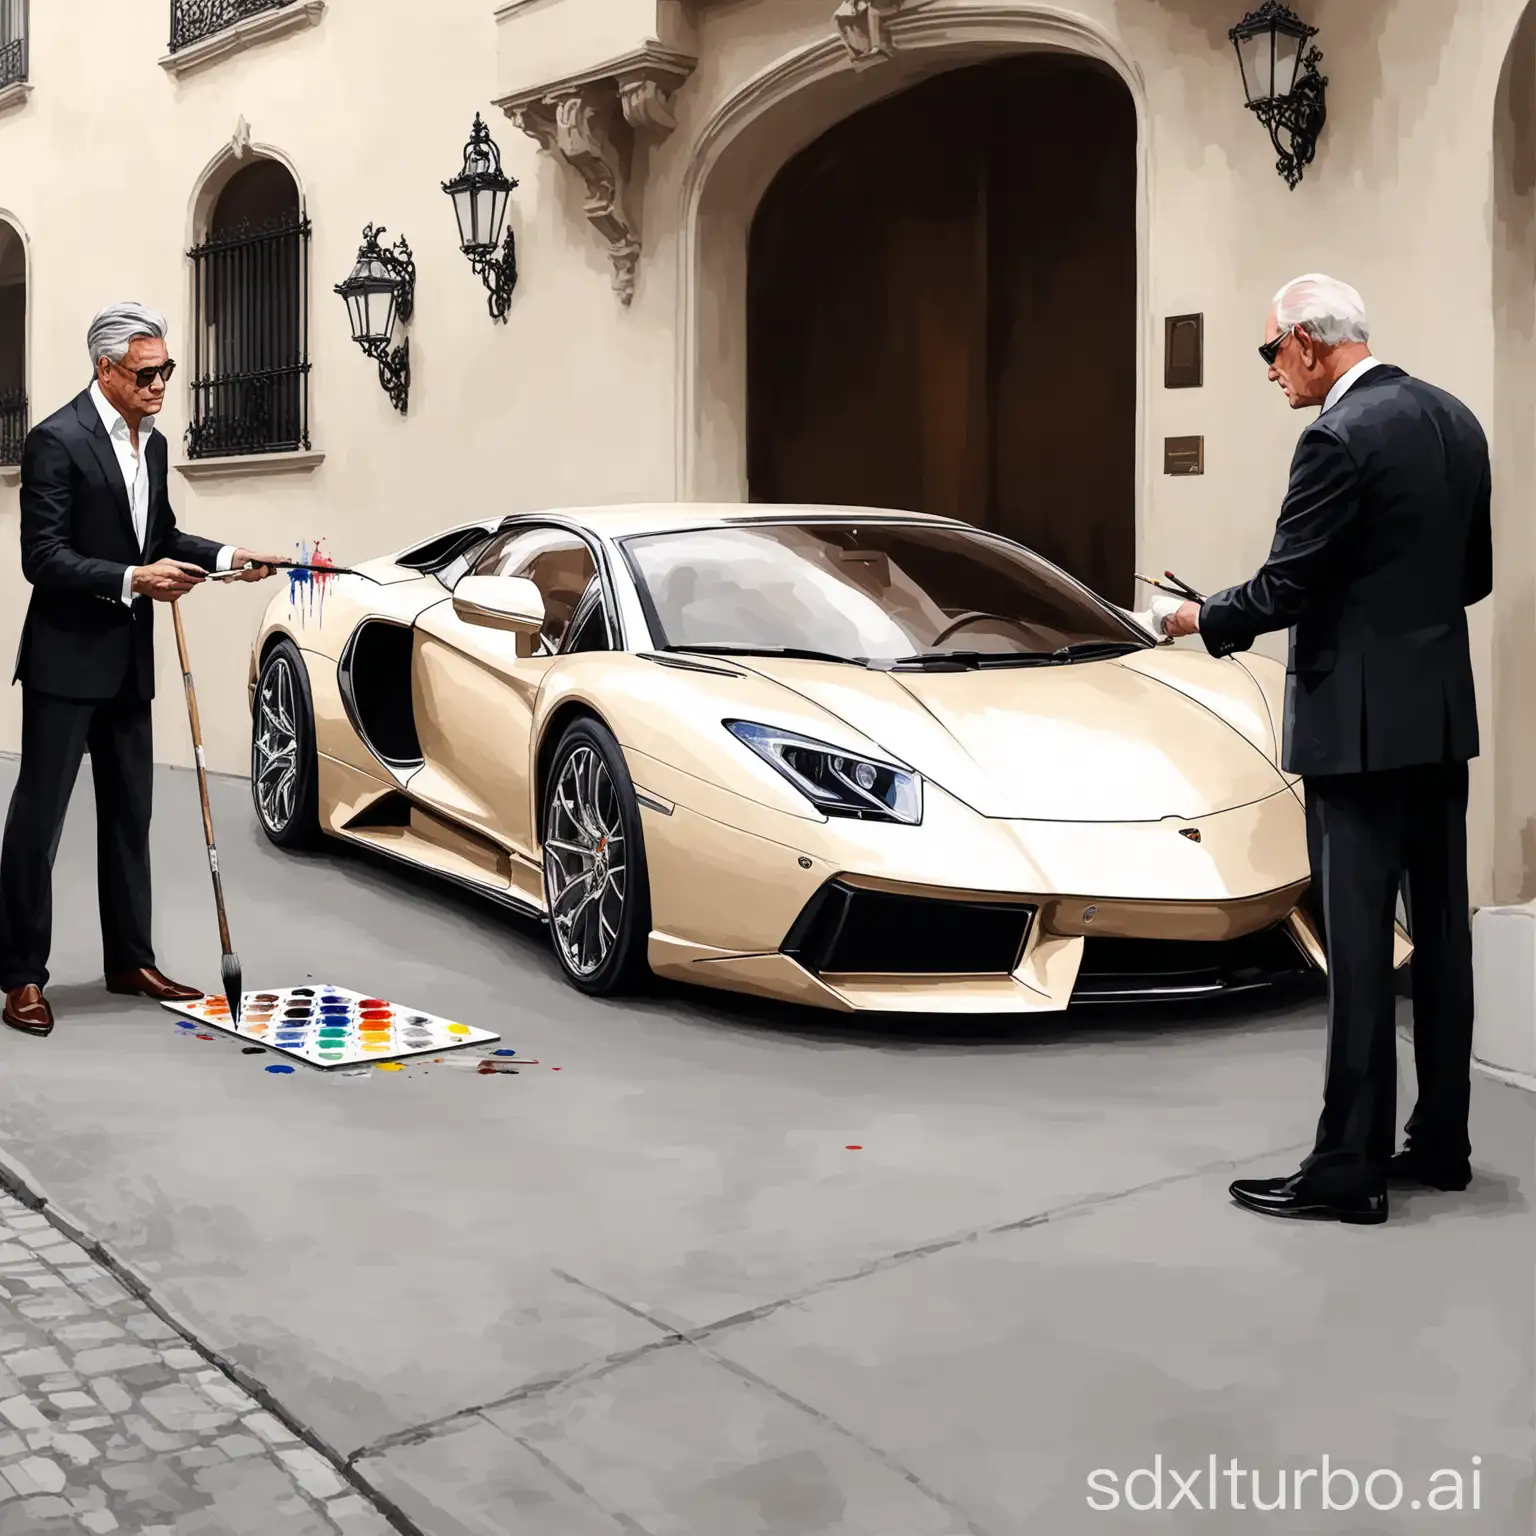 создай картину где 2 богатых мужчин покупают машину дорогую
